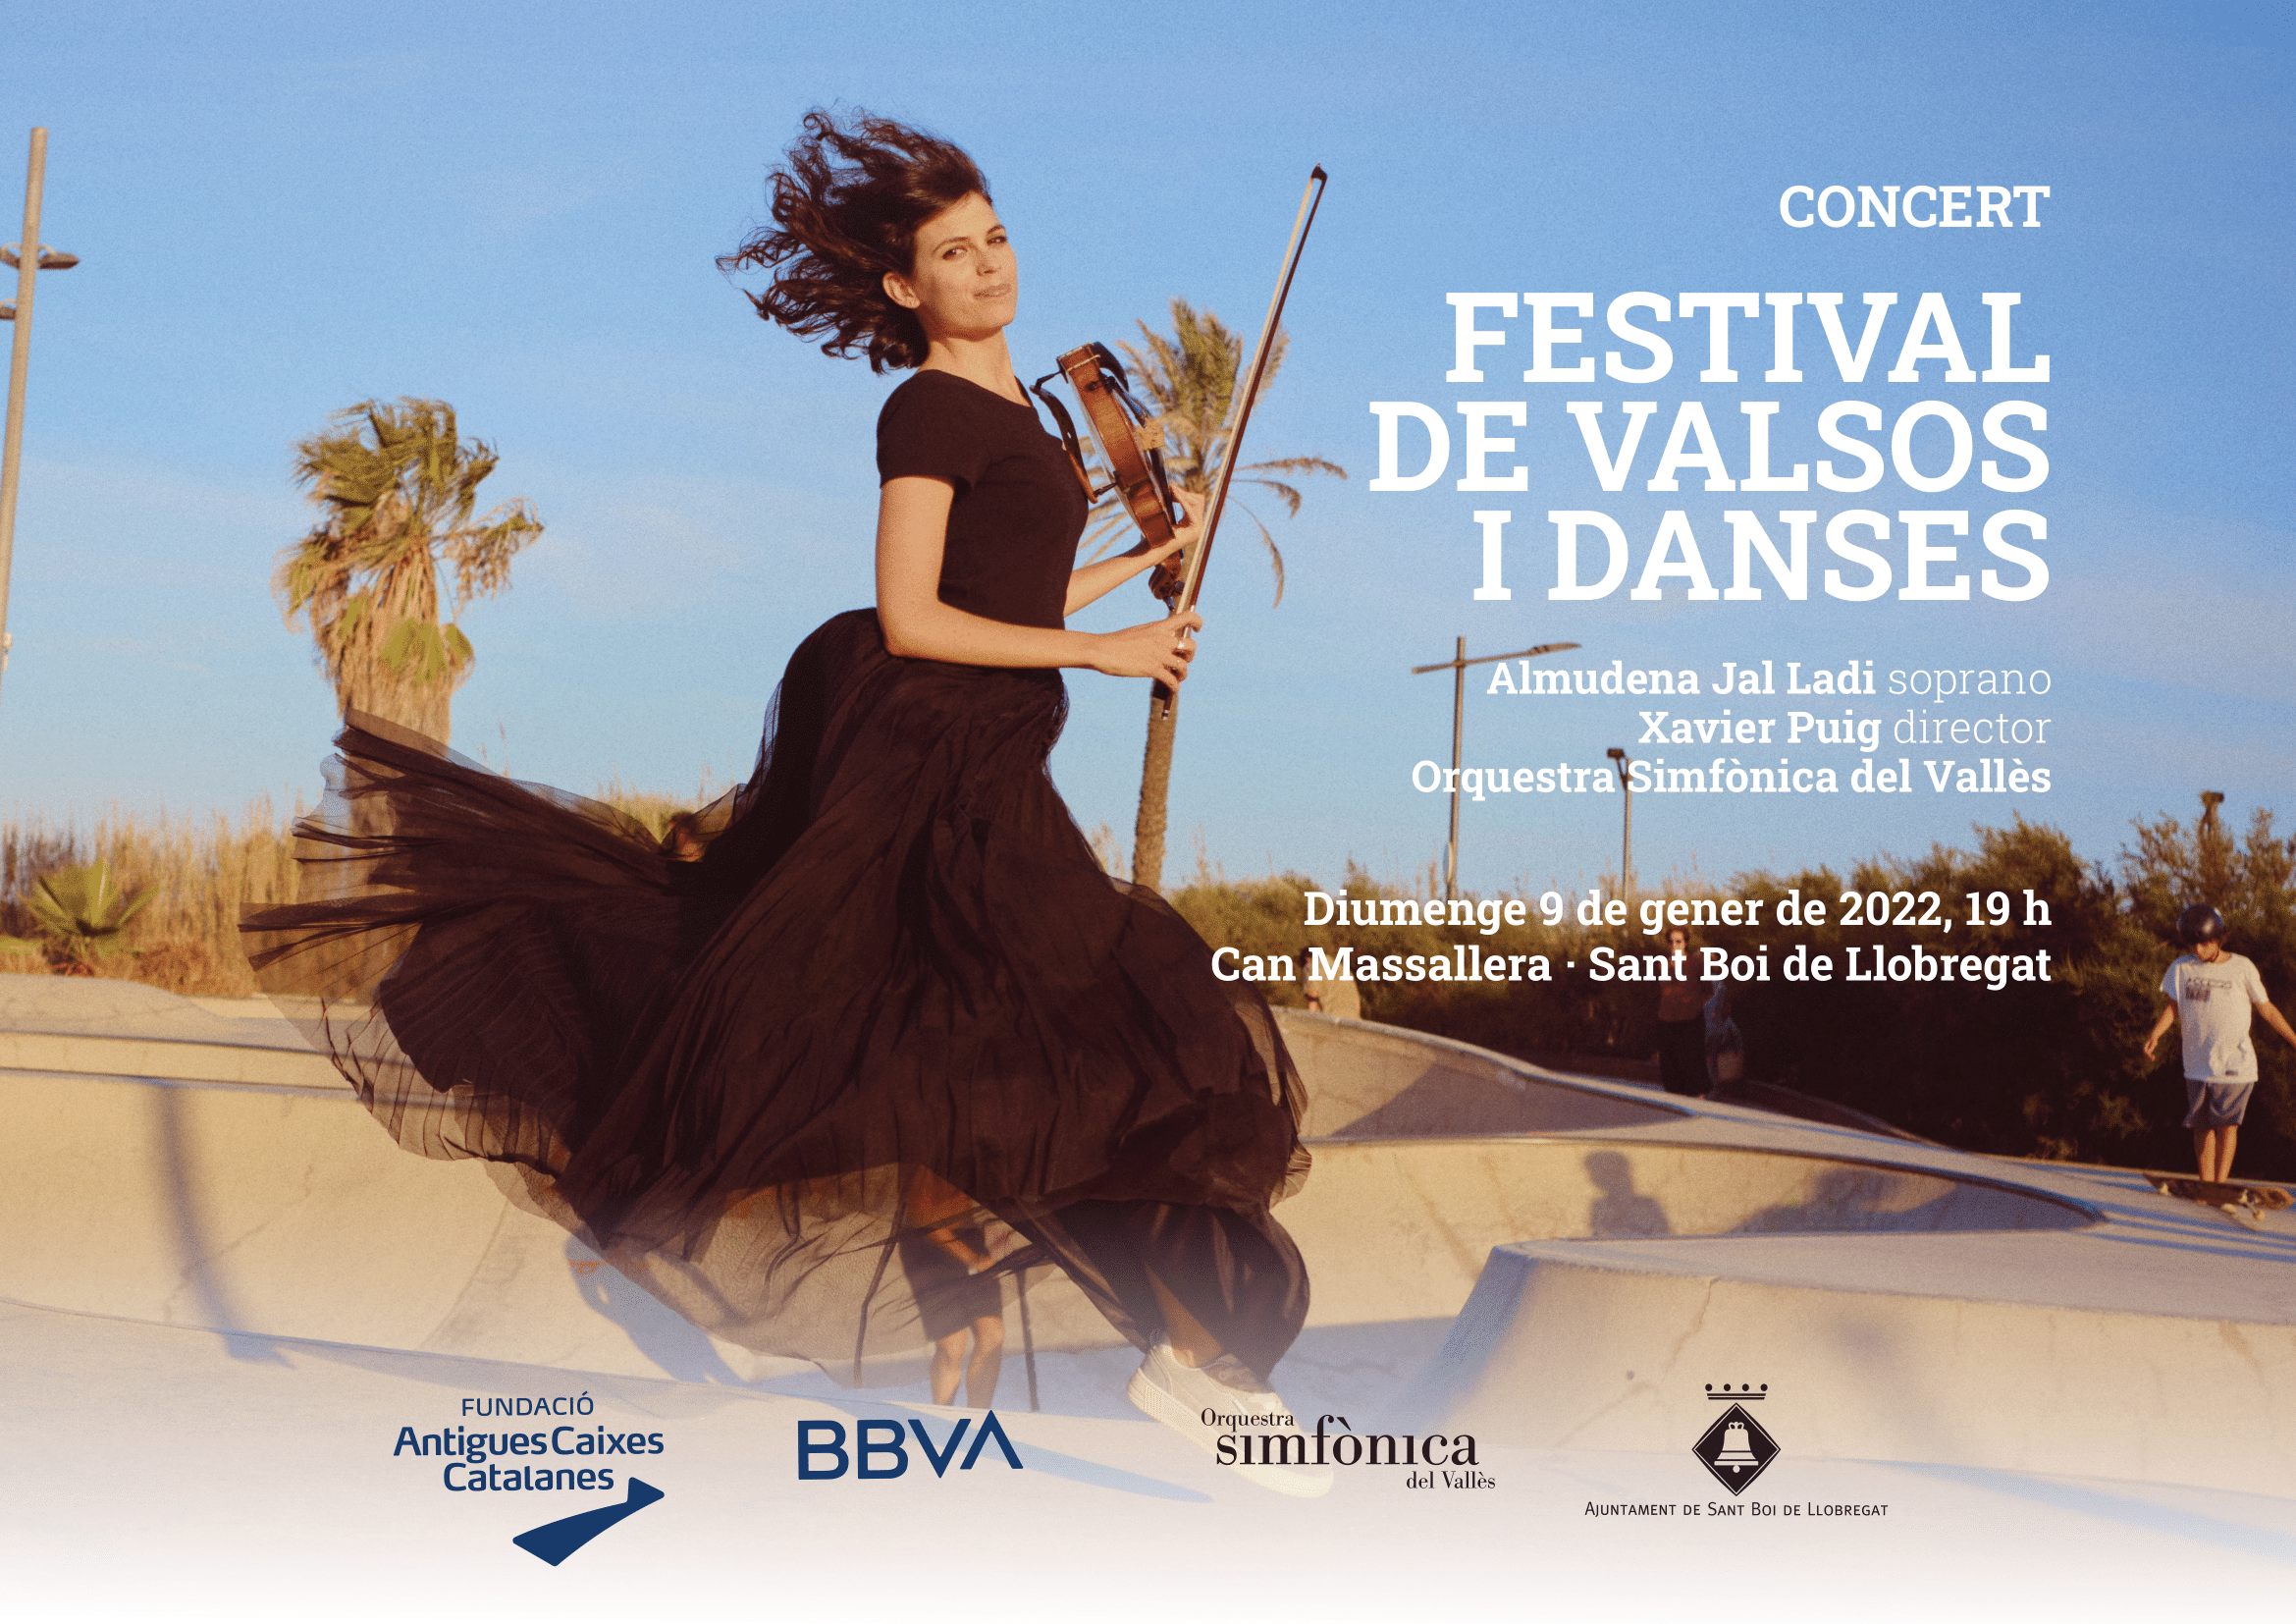 Concert Festival de Valsos i Danses